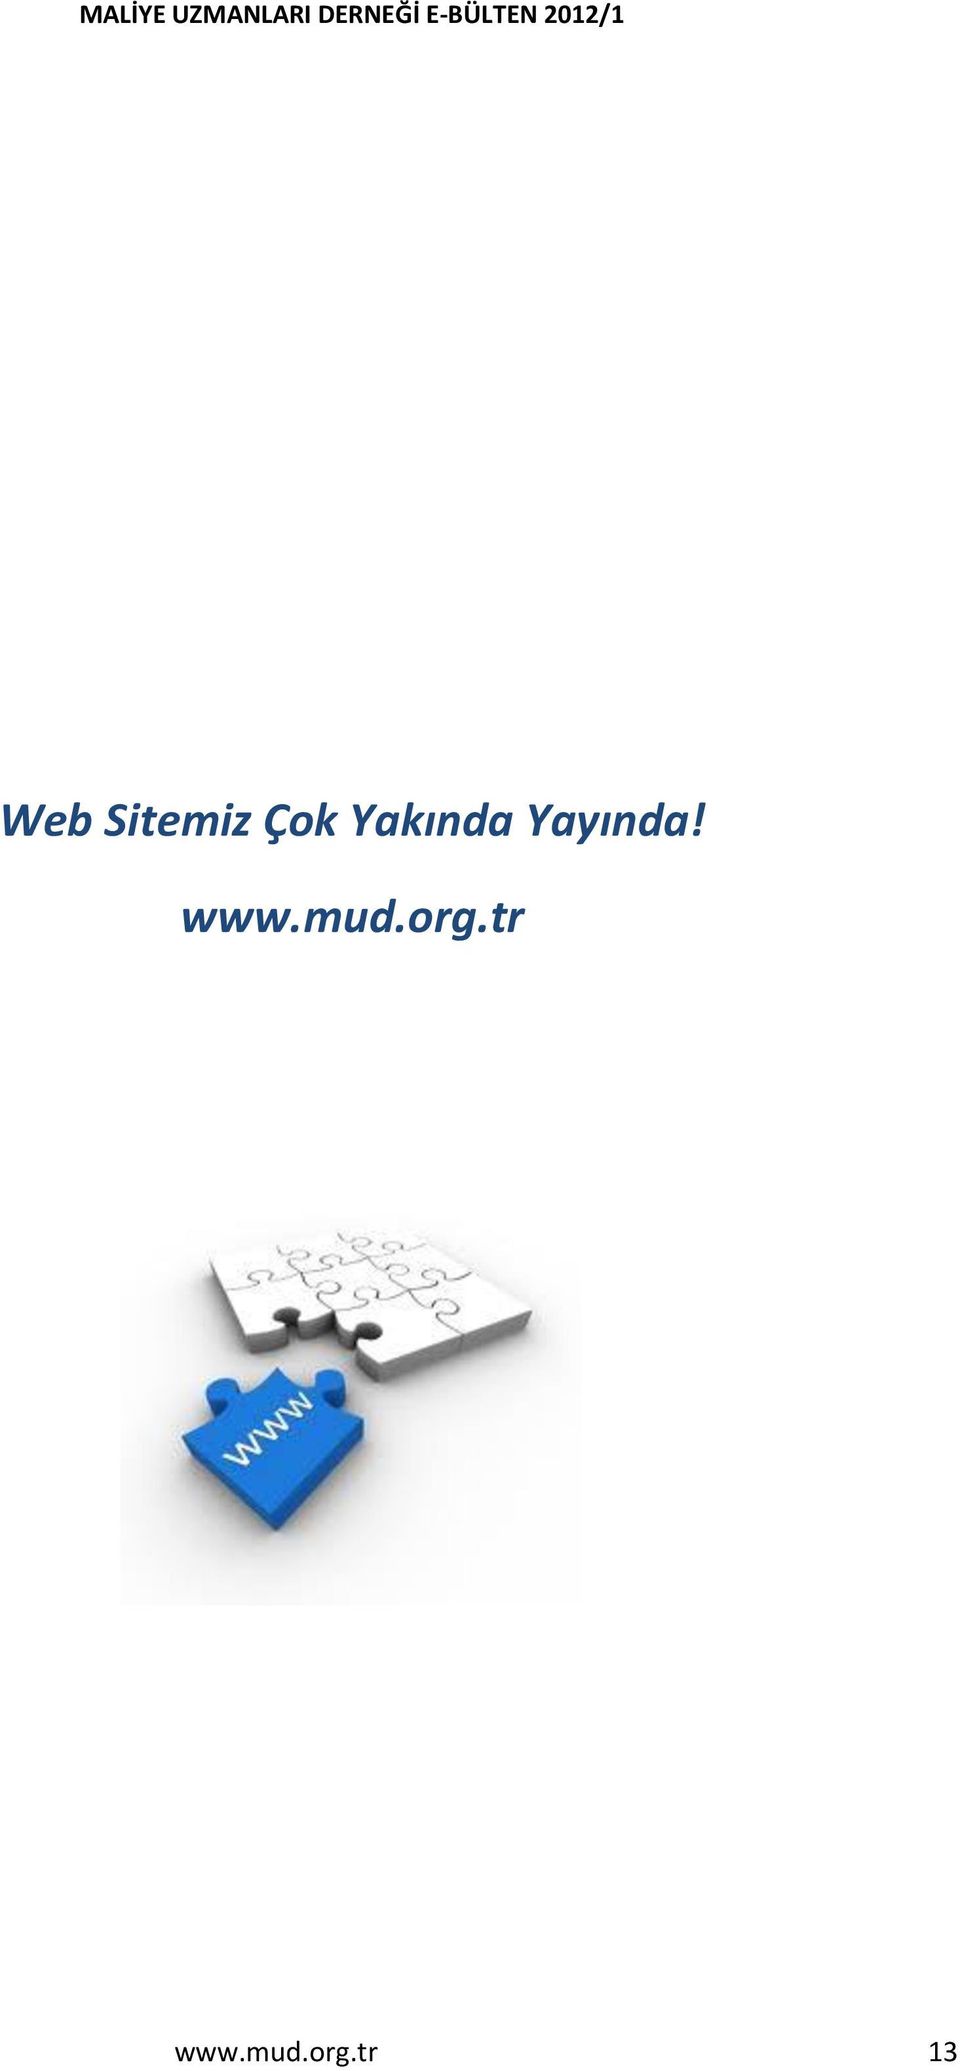 www.mud.org.